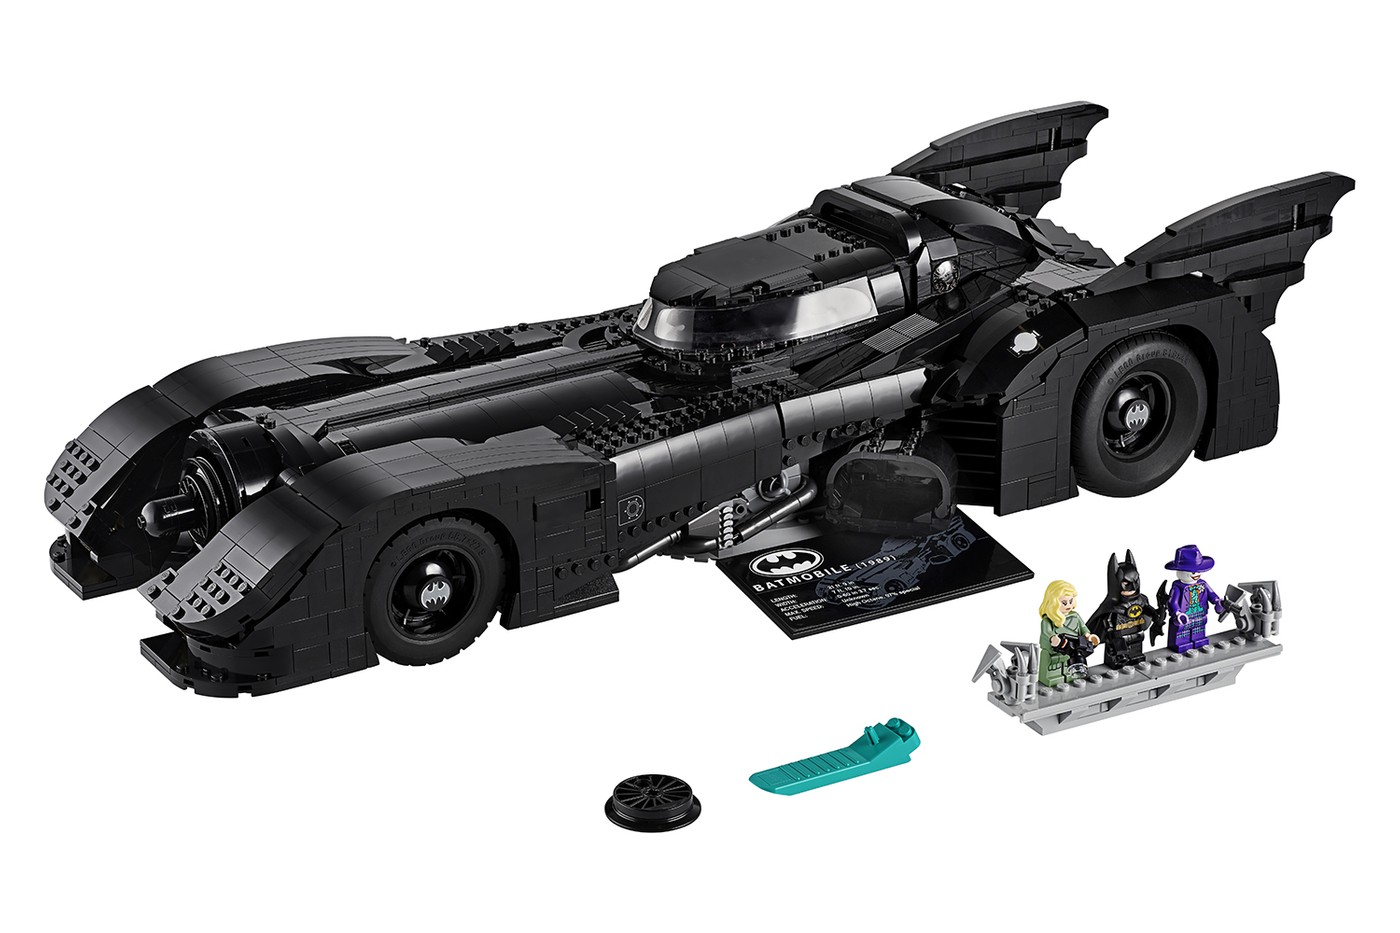 LEGO 推出长达 60 公分之 1989 年《Batman》蝙蝠车积木模型